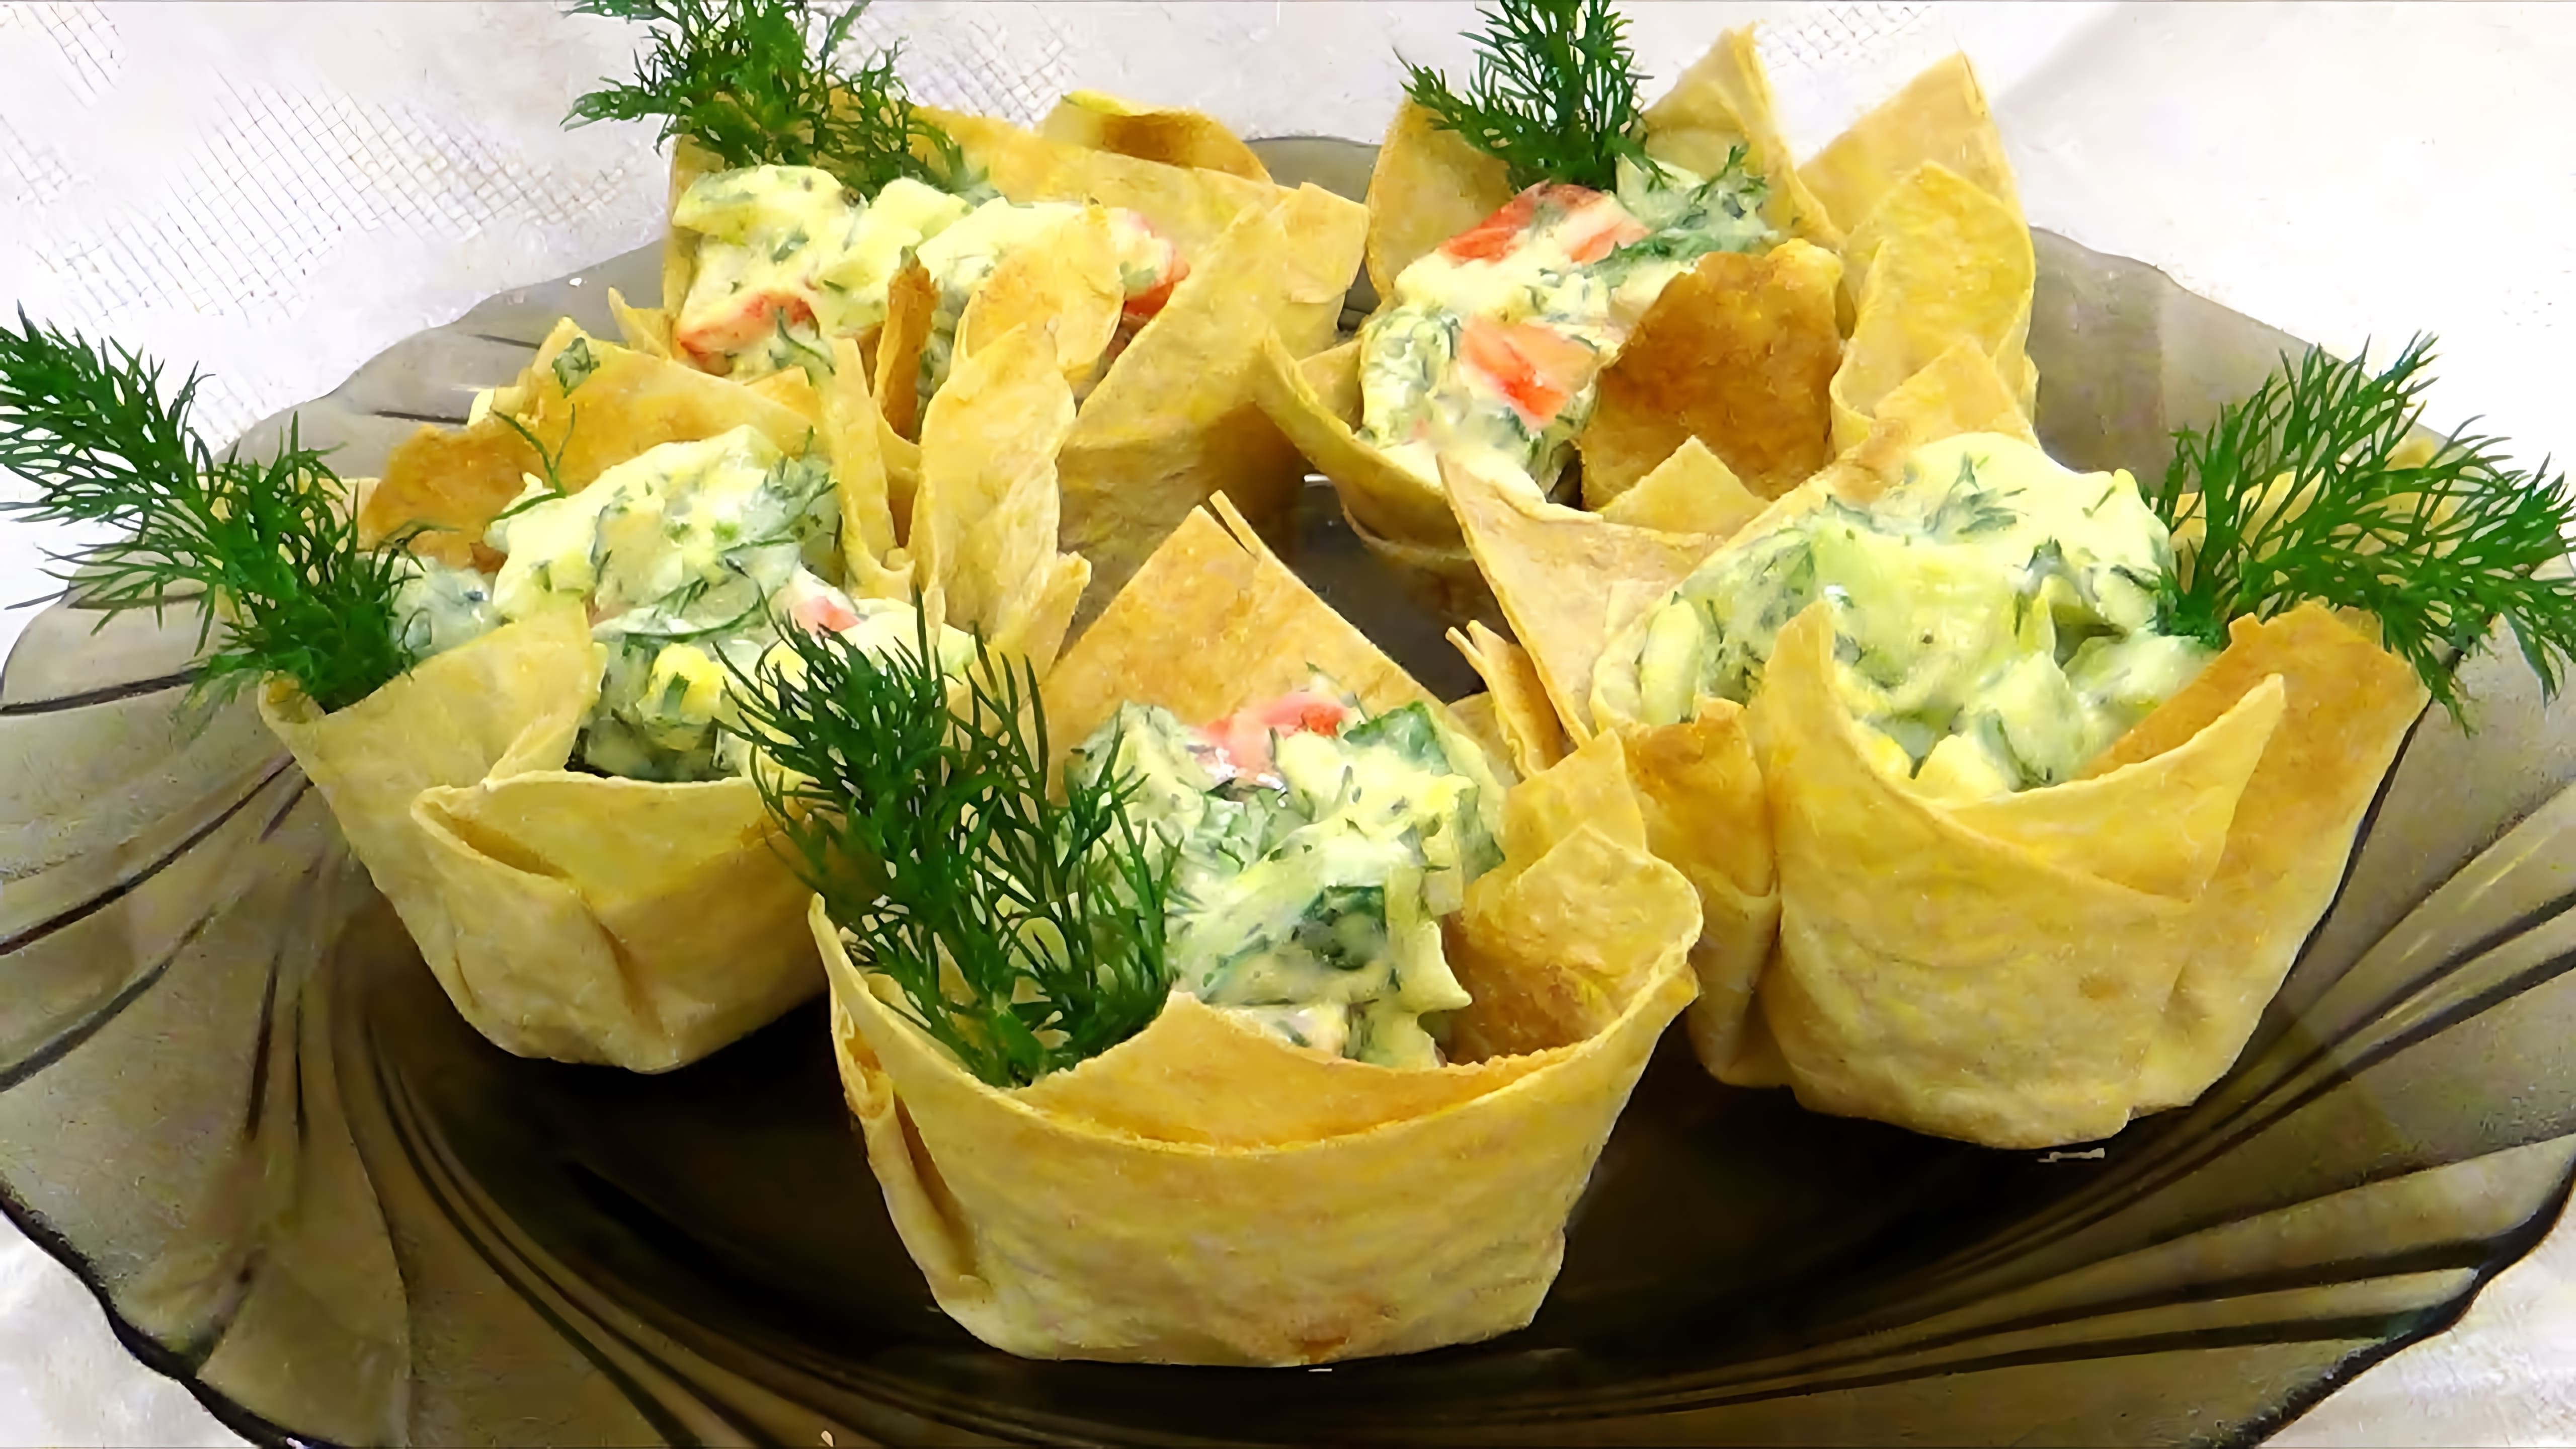 В этом видео демонстрируется процесс приготовления корзинок из лаваша с салатом